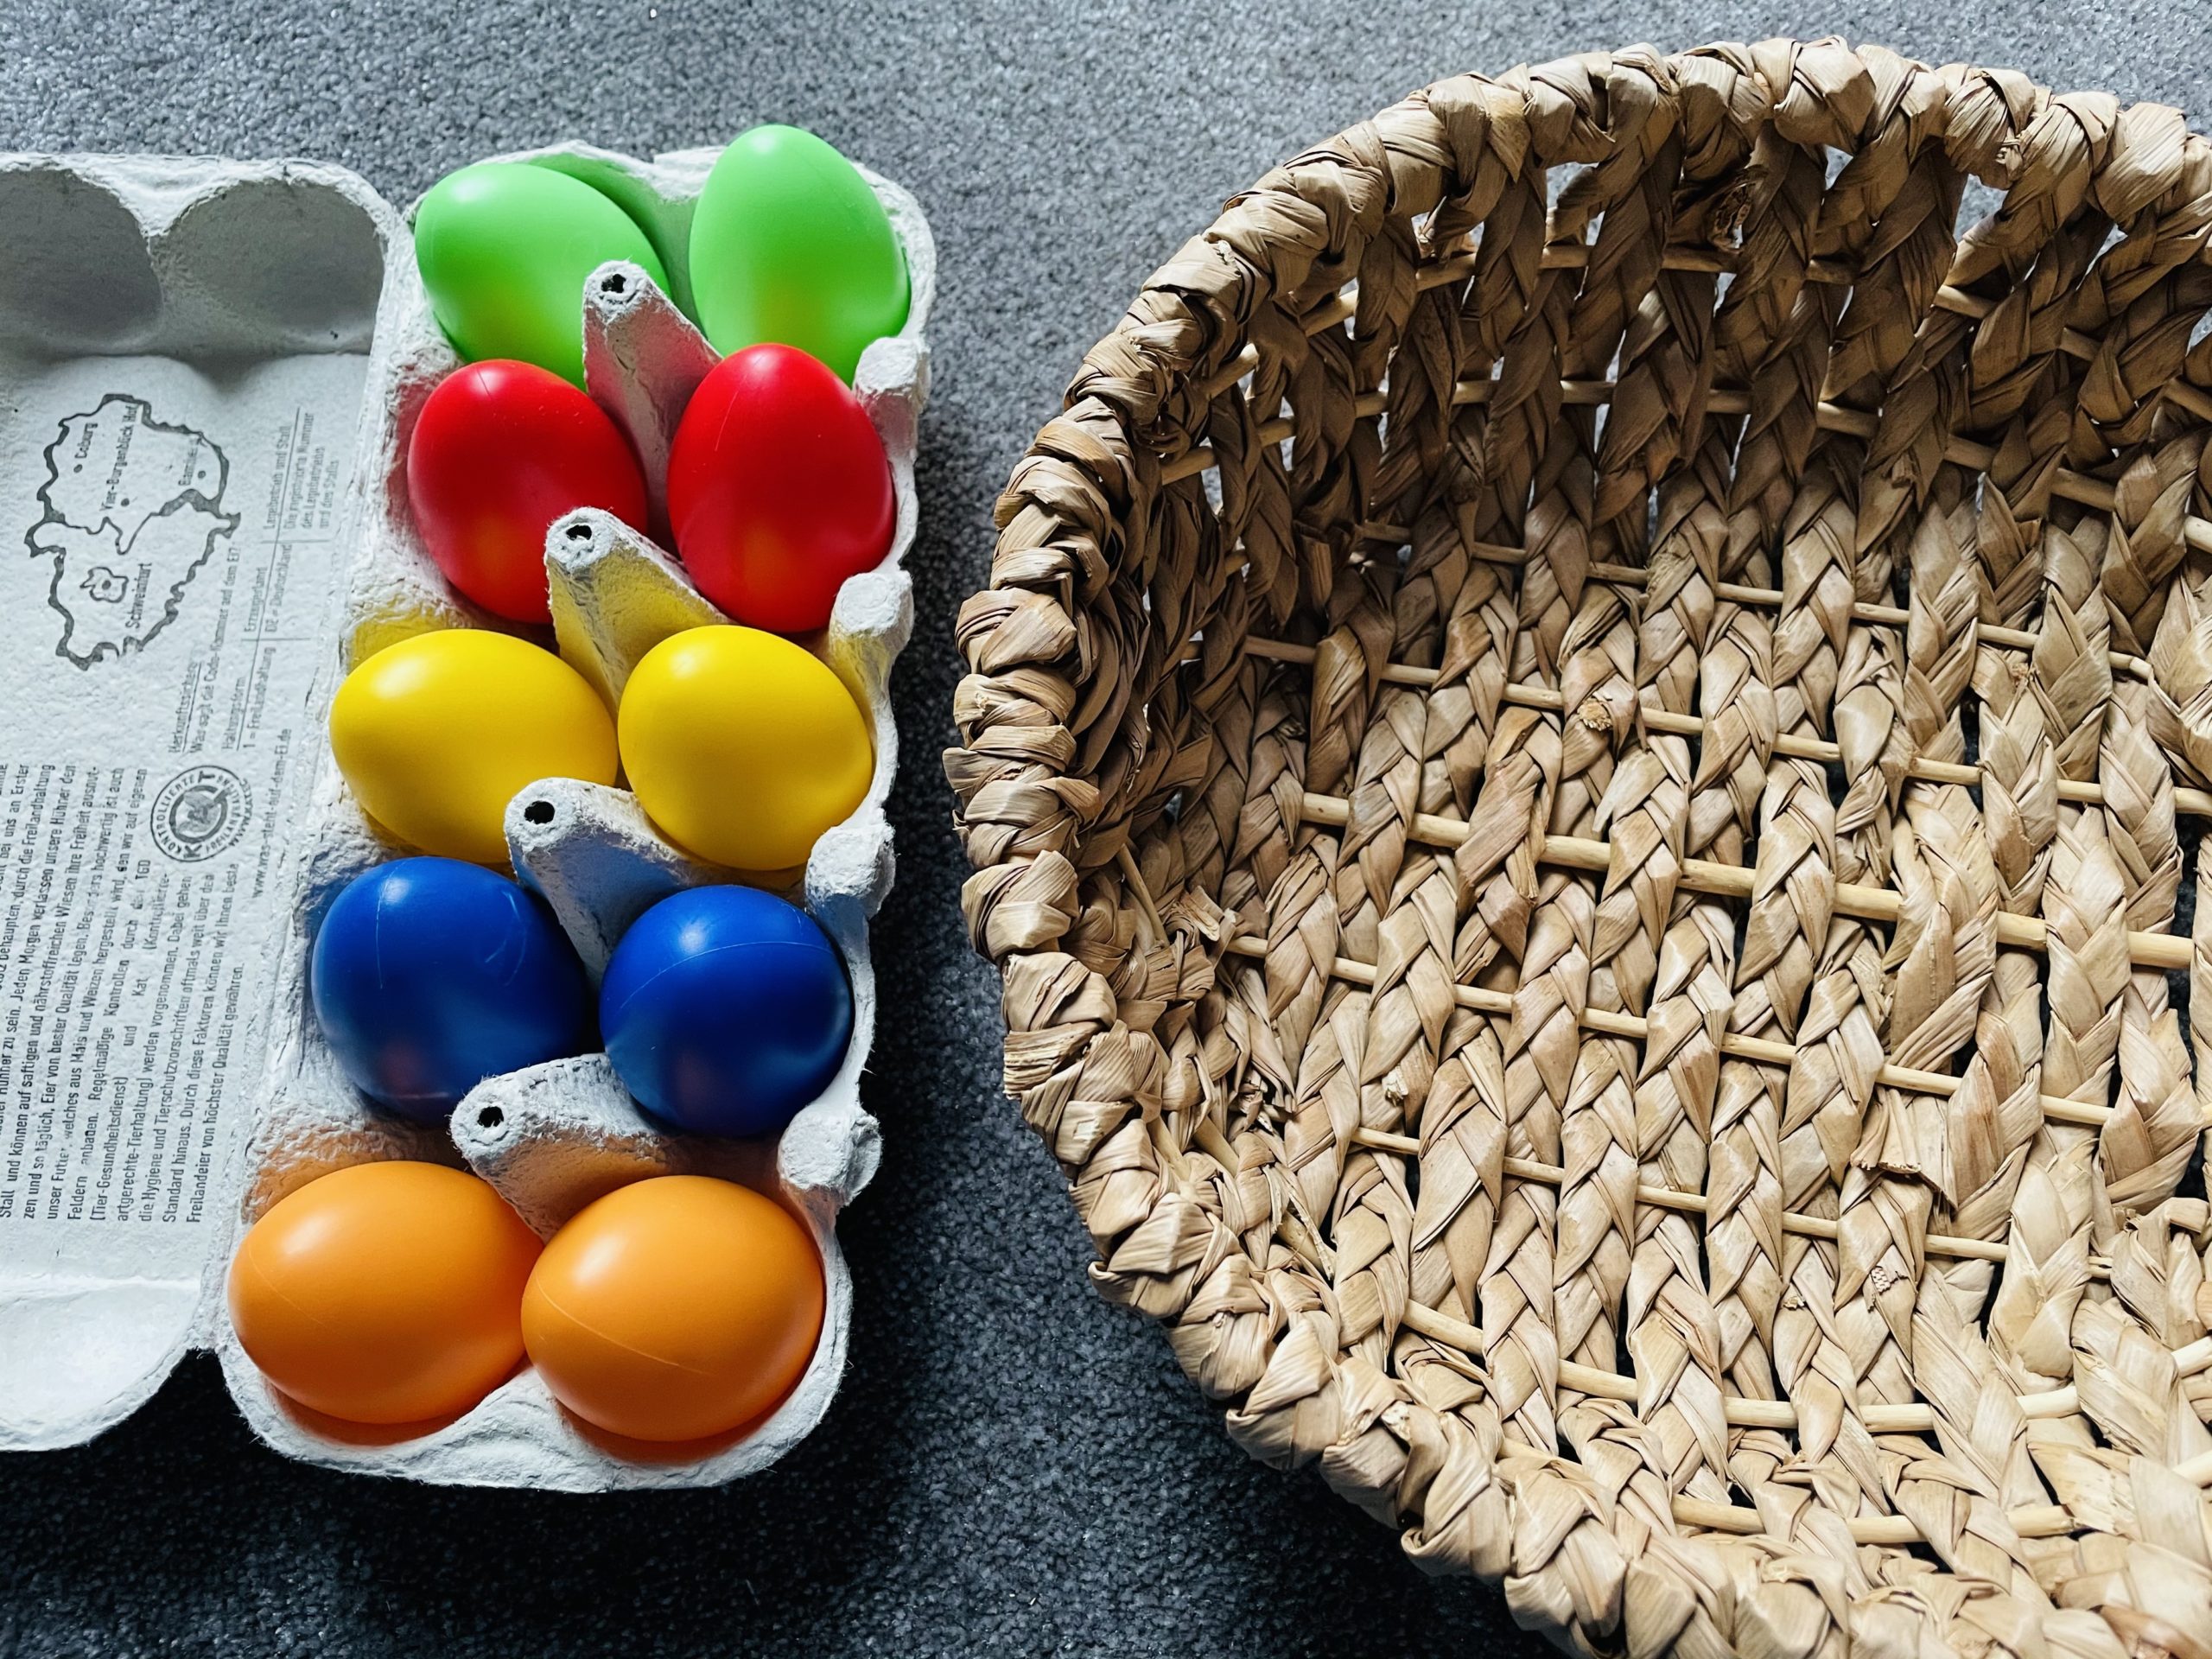 Bild zum Schritt 20 für das Bastel- und DIY-Abenteuer für Kinder: 'Ziel ist, dass alle gleichfarbigen Eier nebeneinander liegen.'